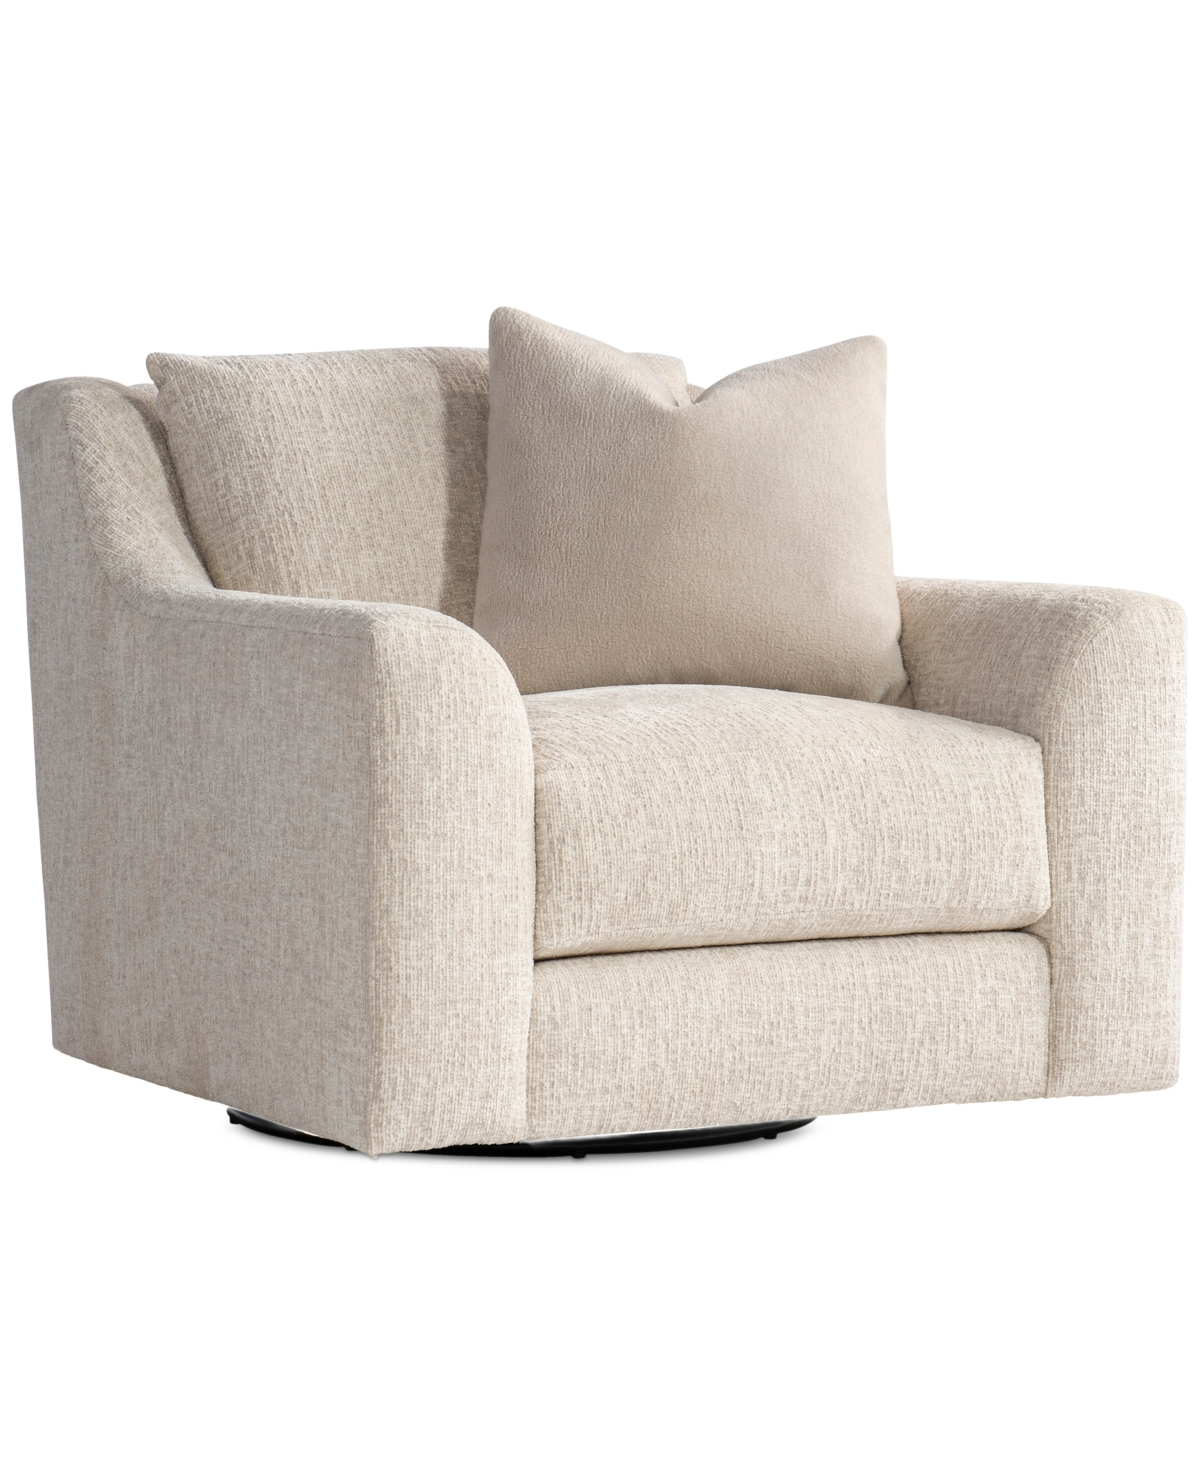 Furniture Gabi 36" Fabric Swivel Chair, Created For Macy's In Tan